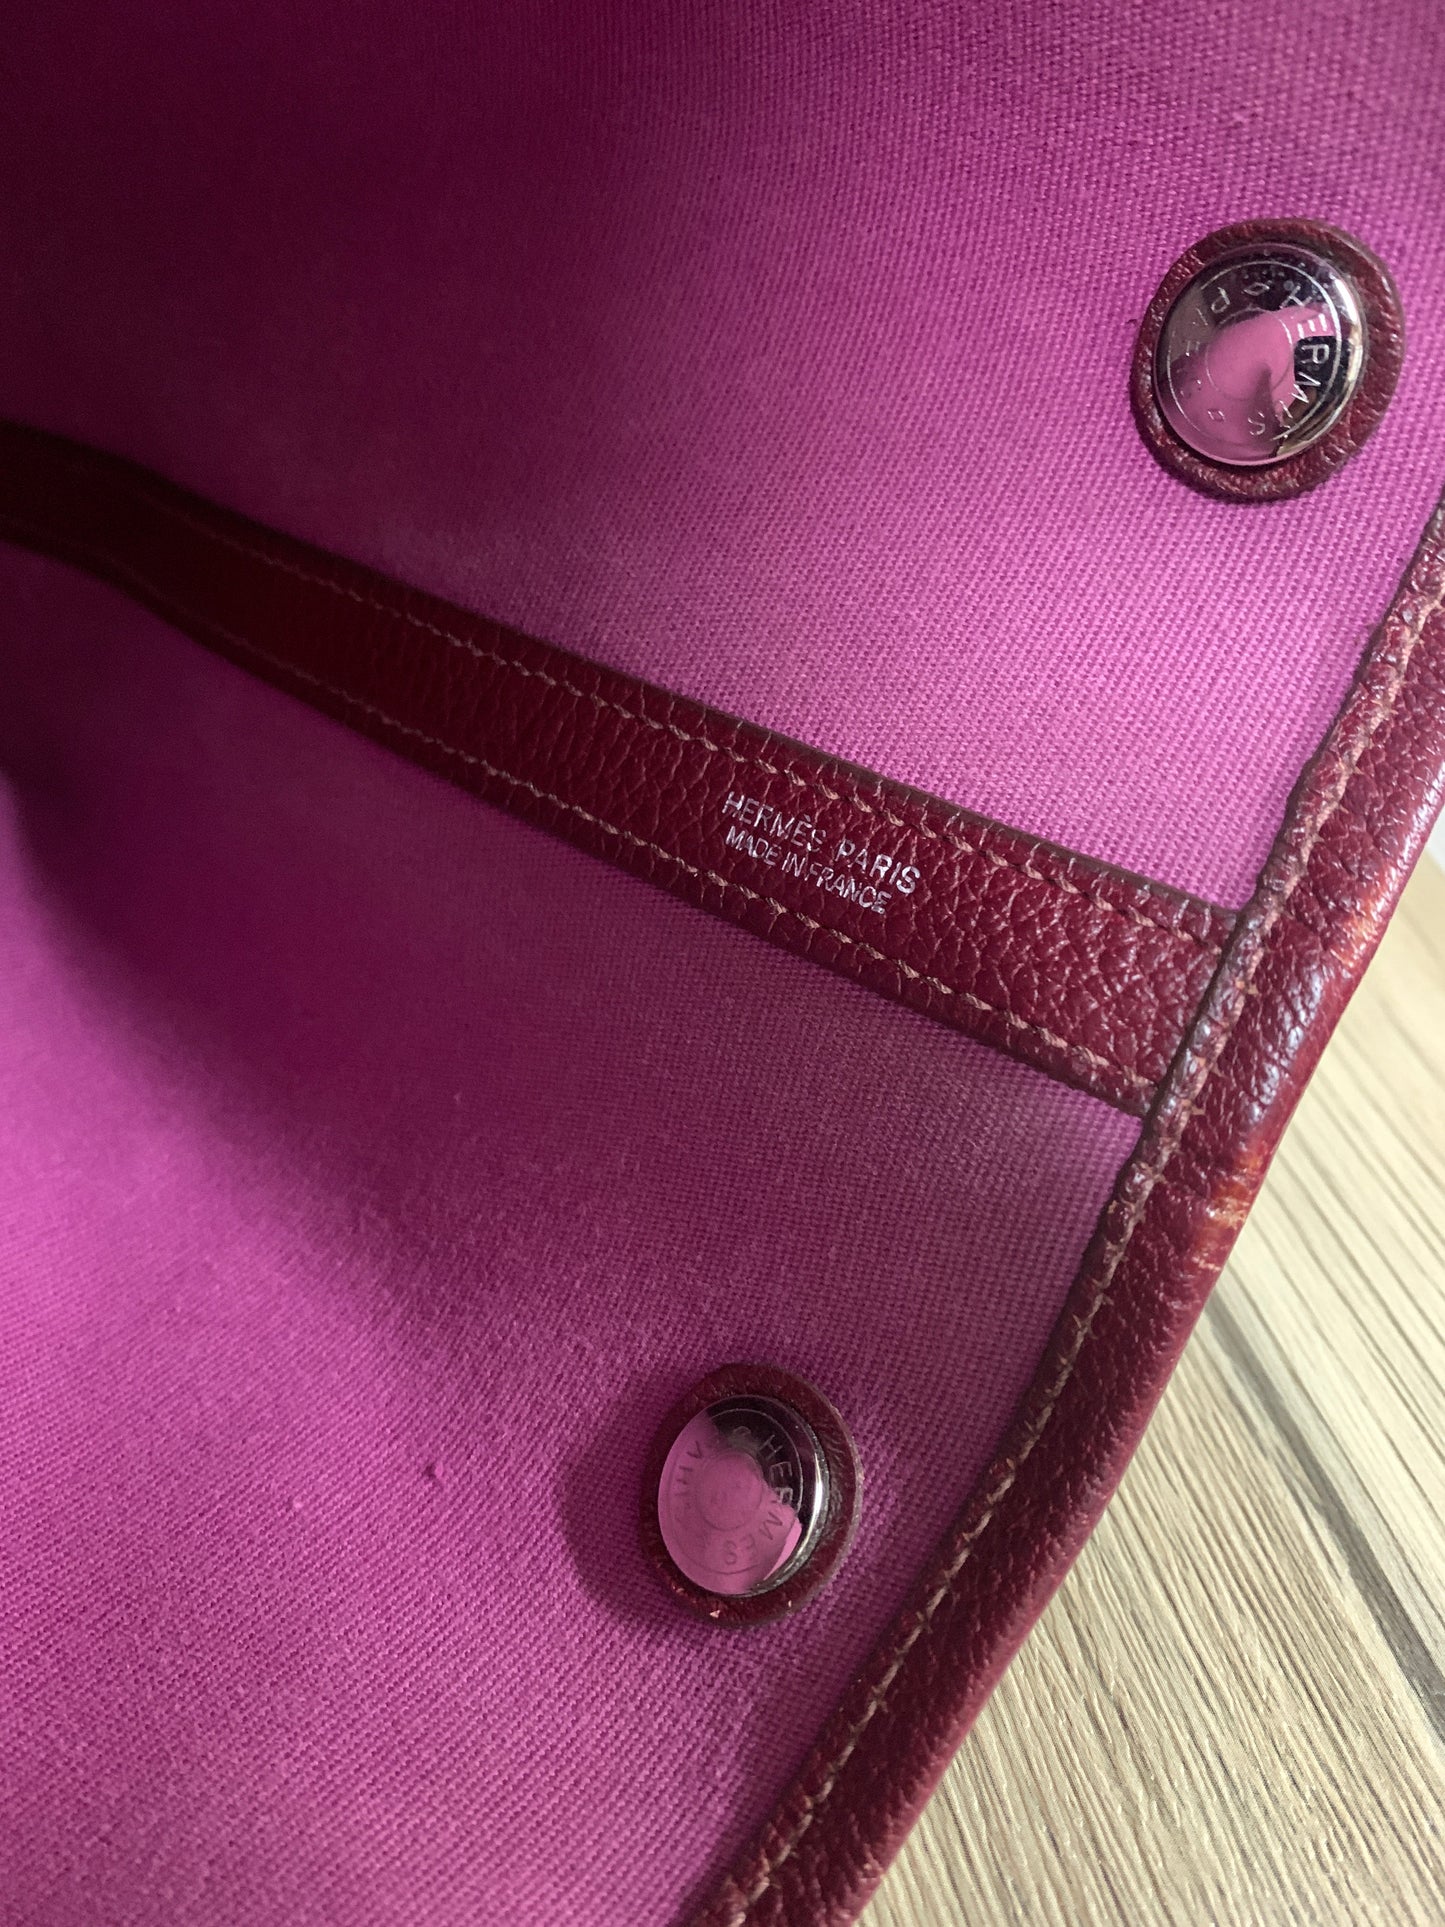 Authentic  vintage Hermes herbag pink red bag tote - 16AUG22